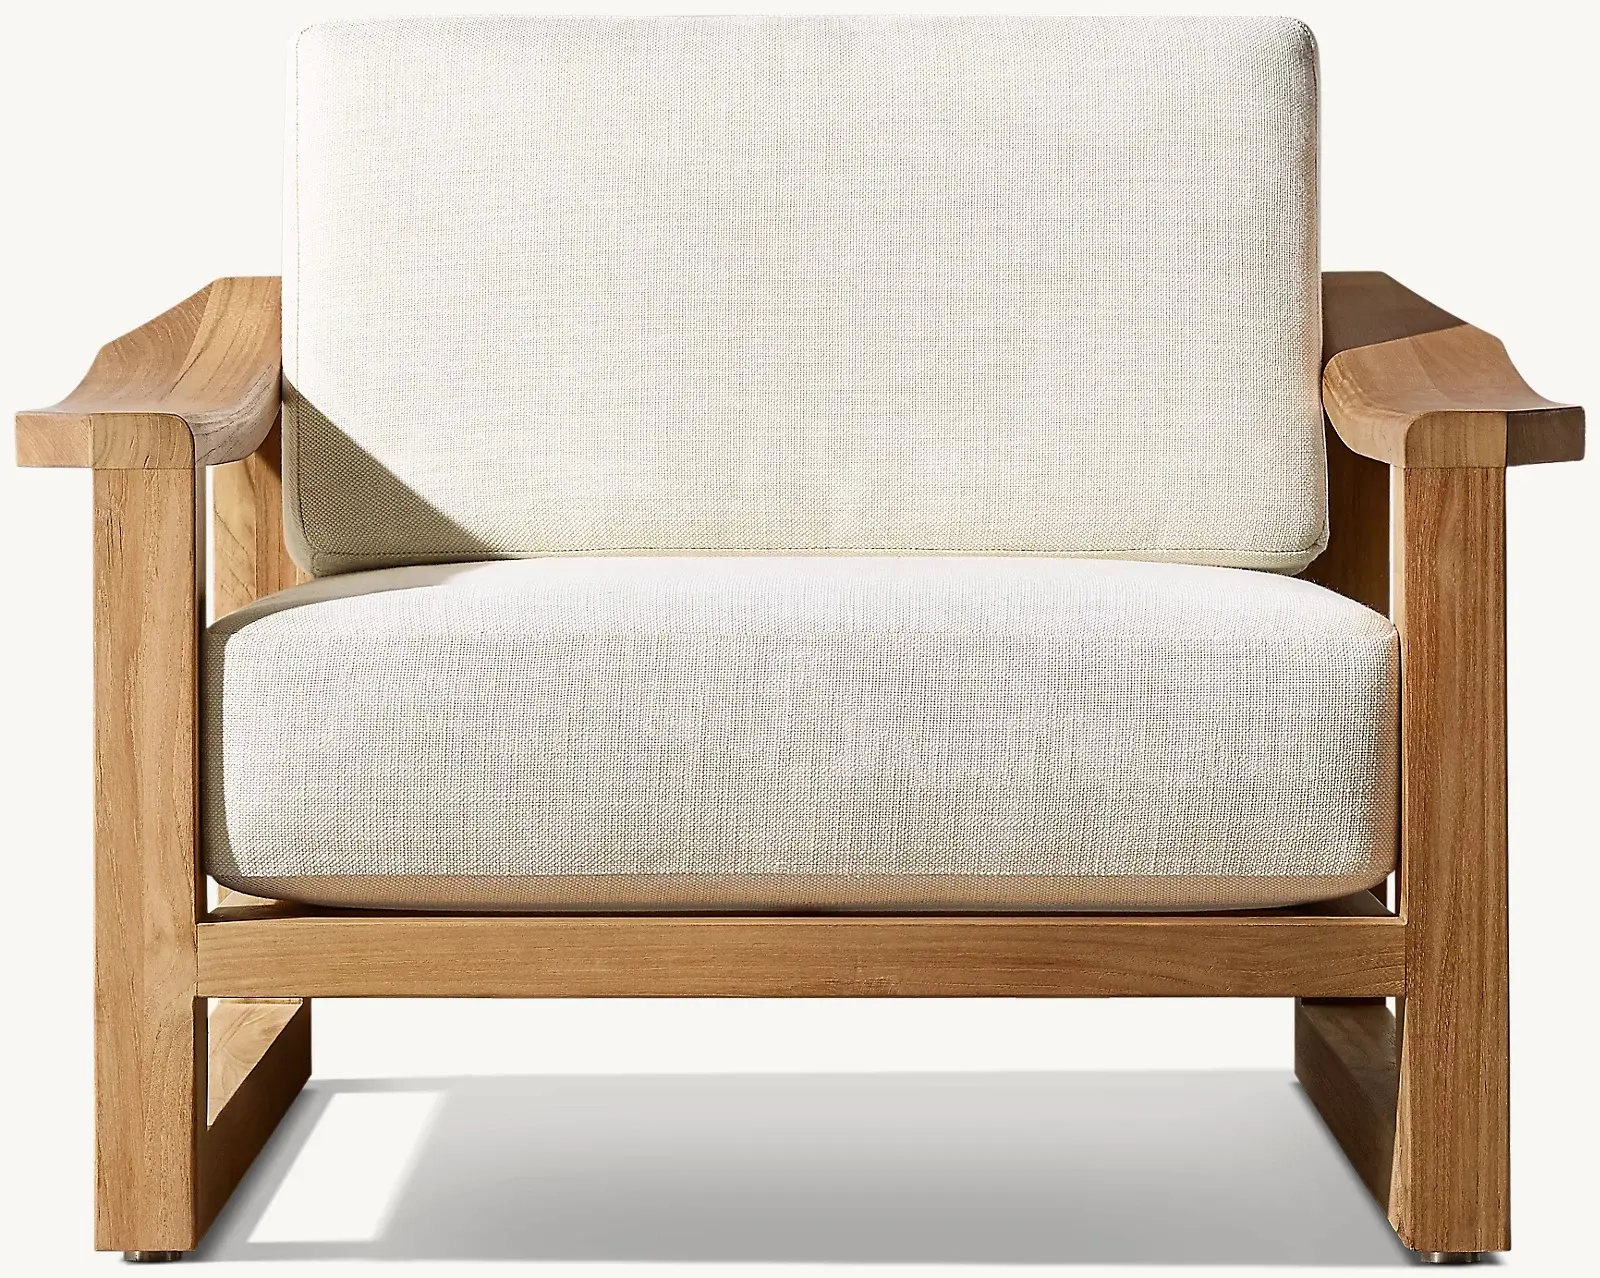 Furnitur kursi Sofa taman, furnitur kursi Sofa luar ruangan gaya Modern, sentuhan warna cuaca alami, bahan kayu jati